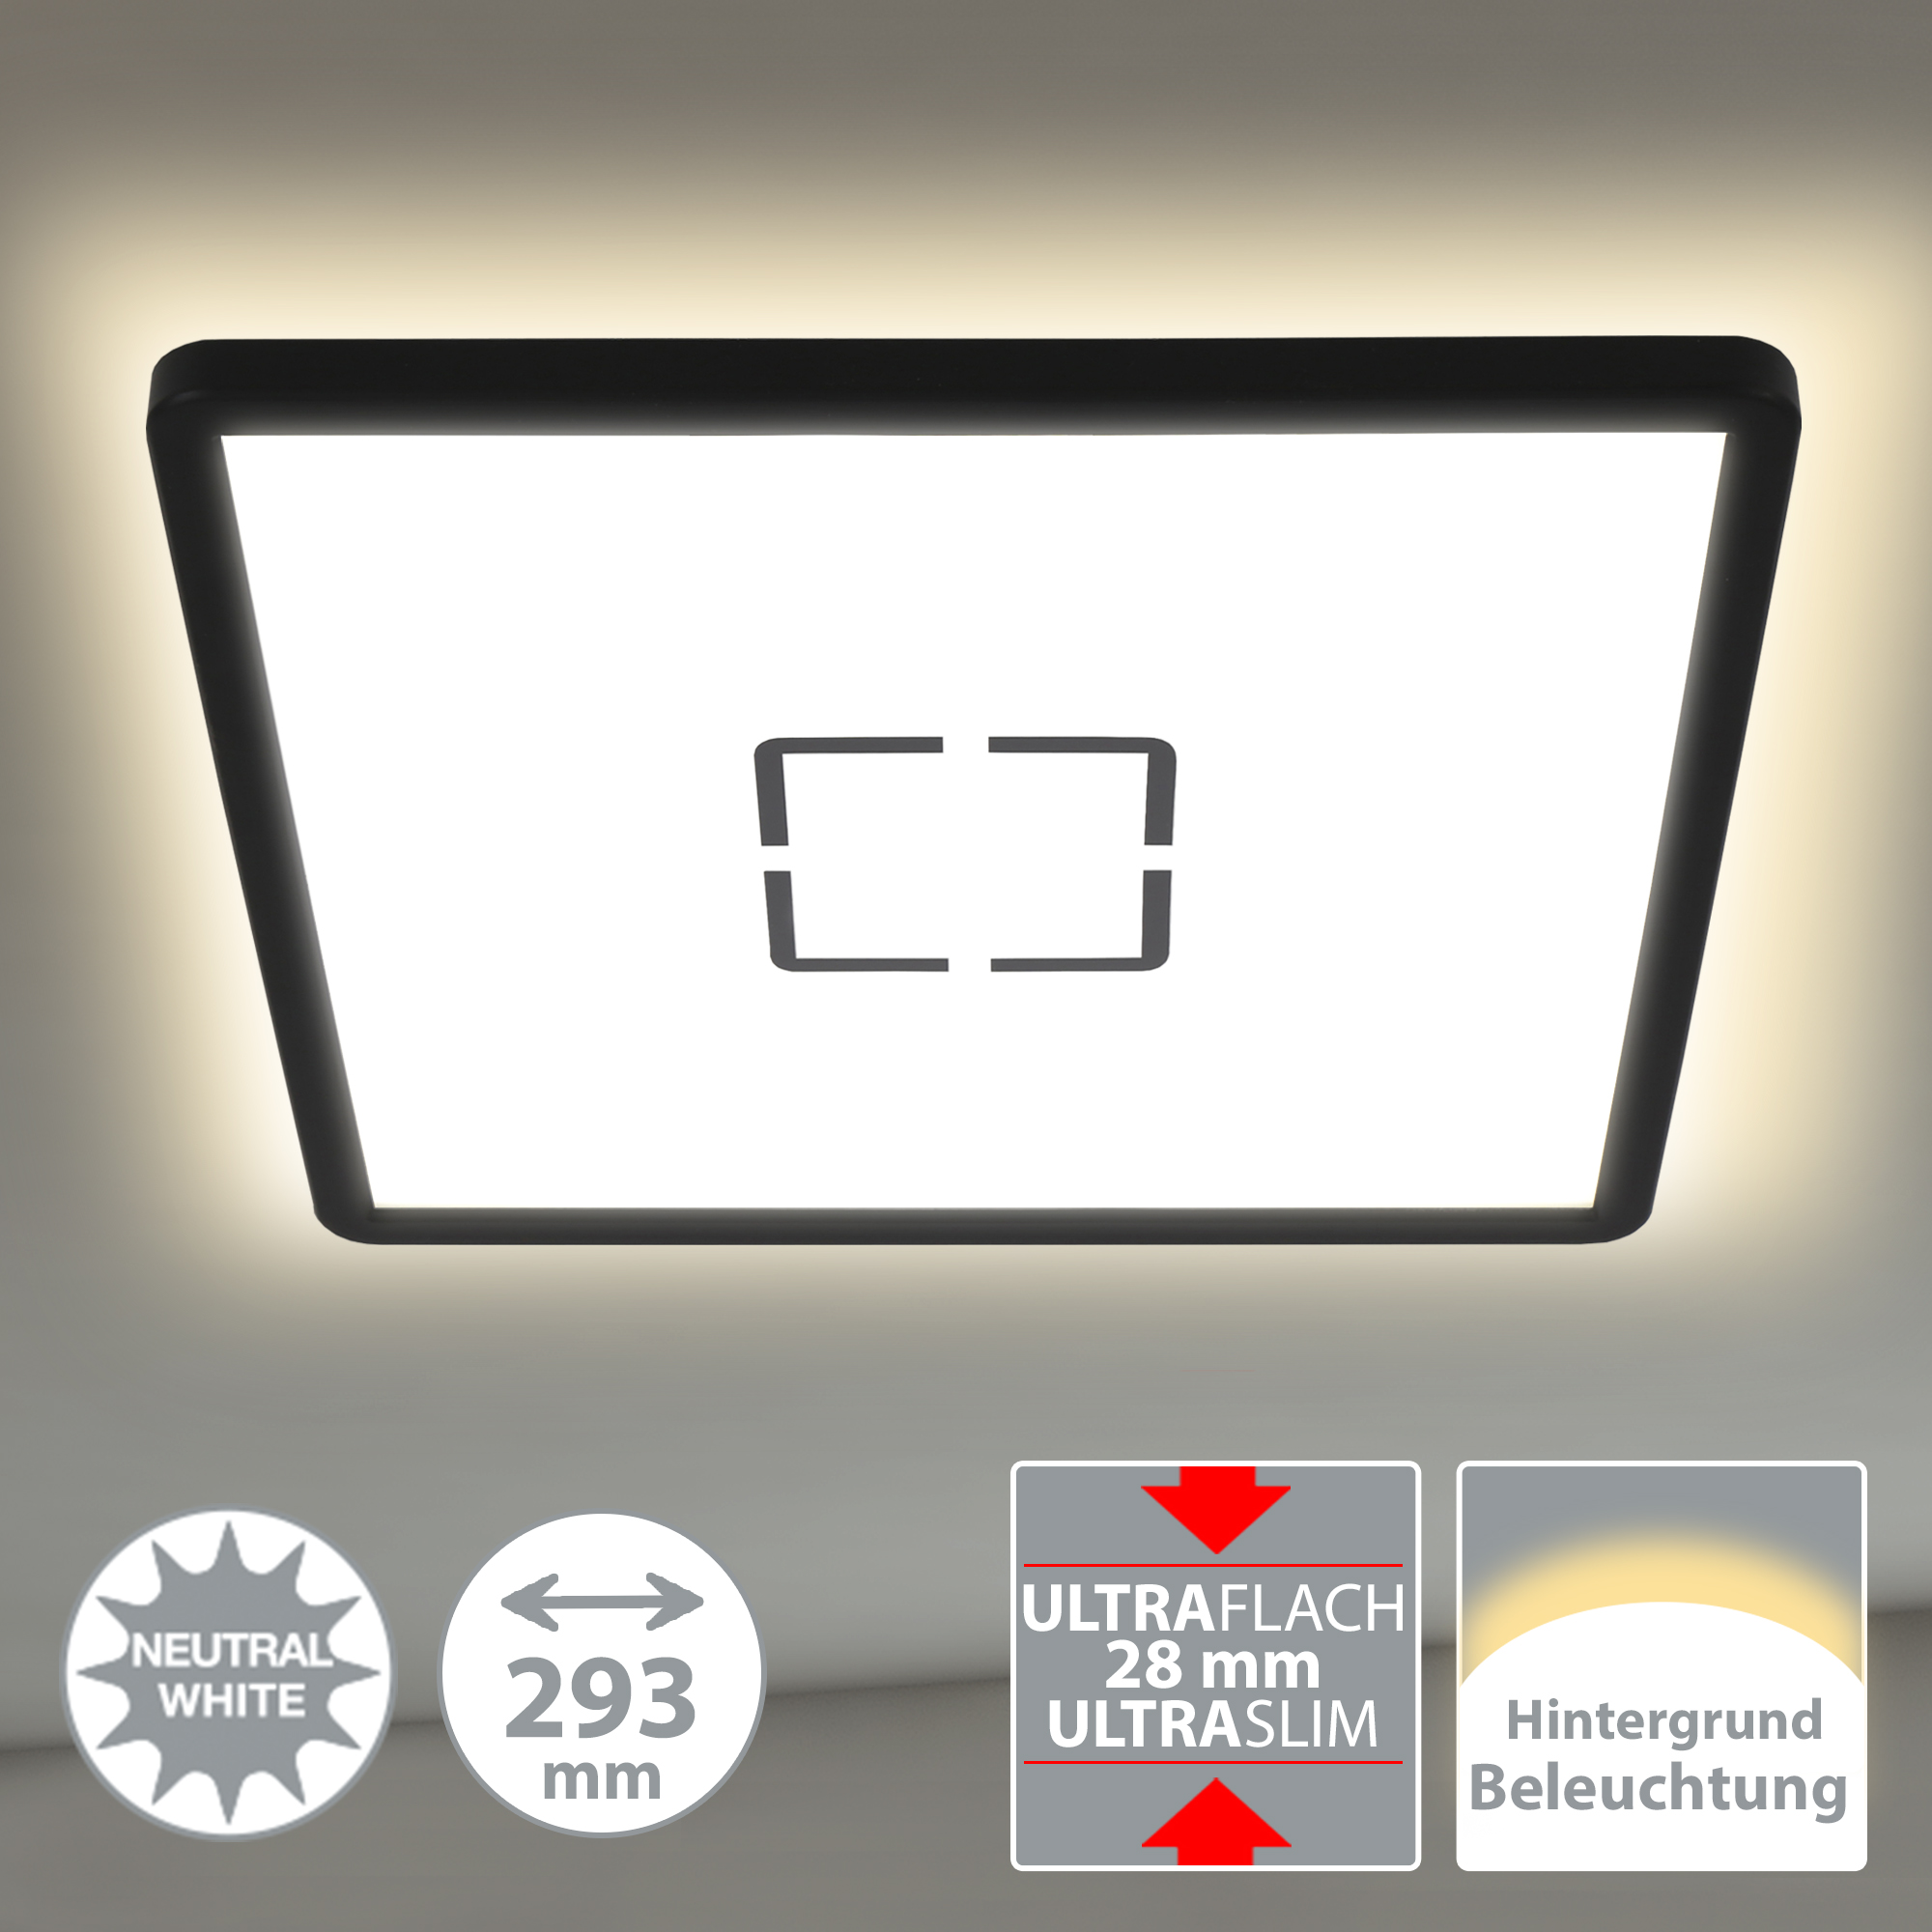 LED-Deckenleuchte 'Free' weiß/schwarz 29,3 x 29,3 cm 2400 lm + product picture